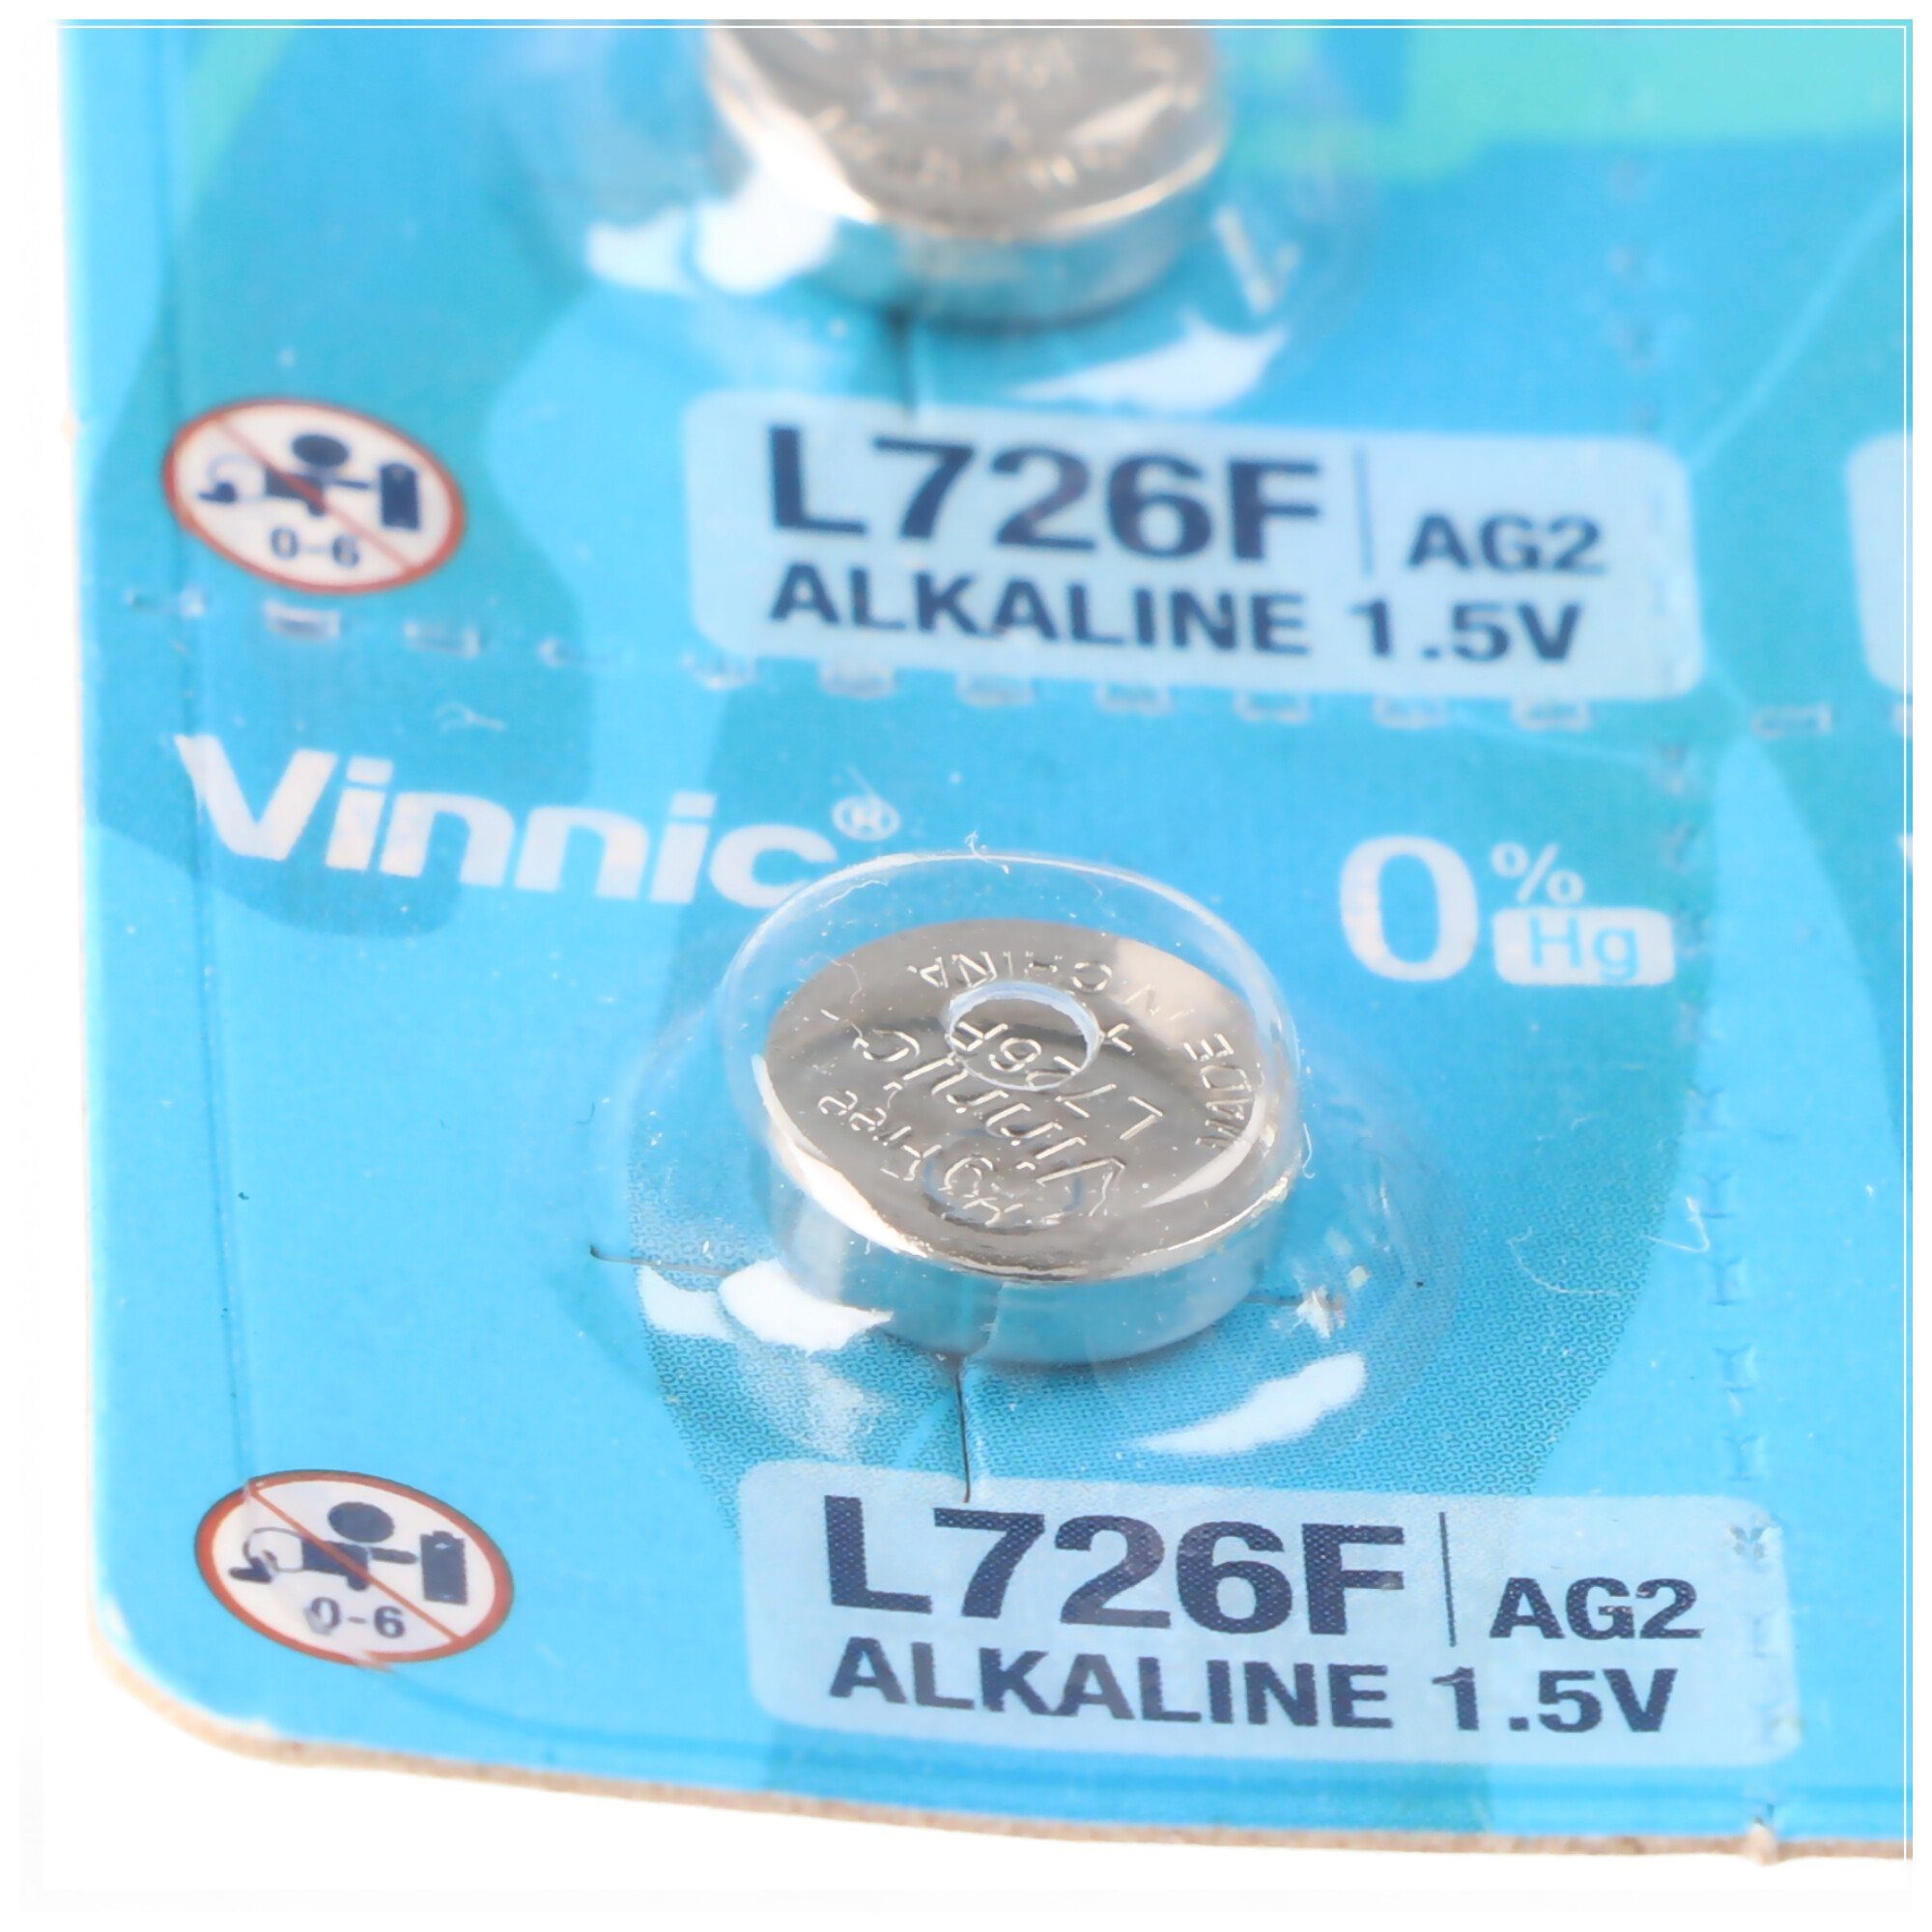 Stück Knopfzelle 10 Alkaline G2, Bat AG2, LR59 Knopfzellen Mini Vinnic L726, AG2 VINNIC